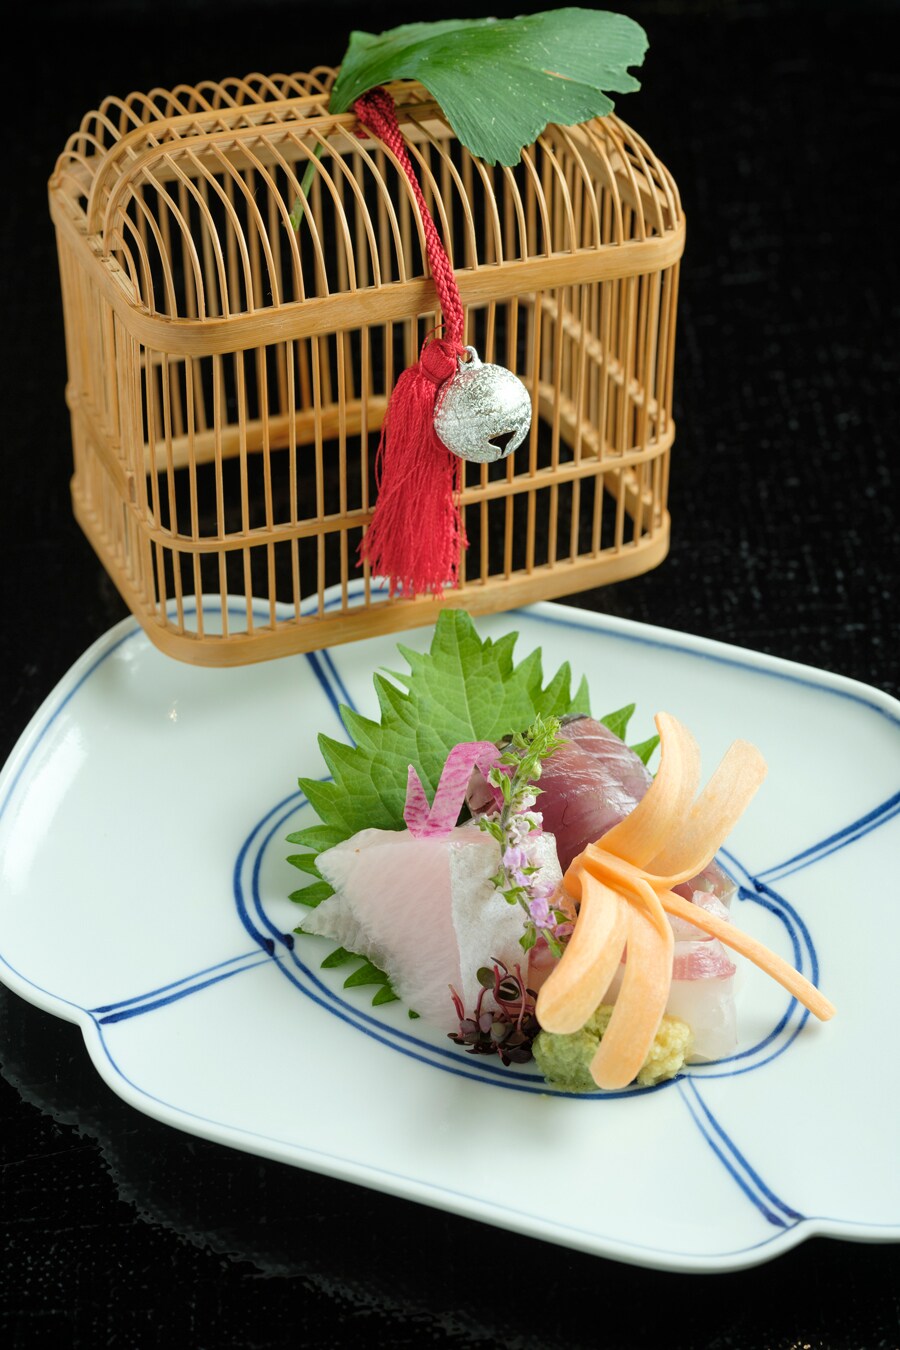 日本料理「縁 (ゆくり)」の “本日のお造り”。こだわりの器で季節の情緒を添えます。